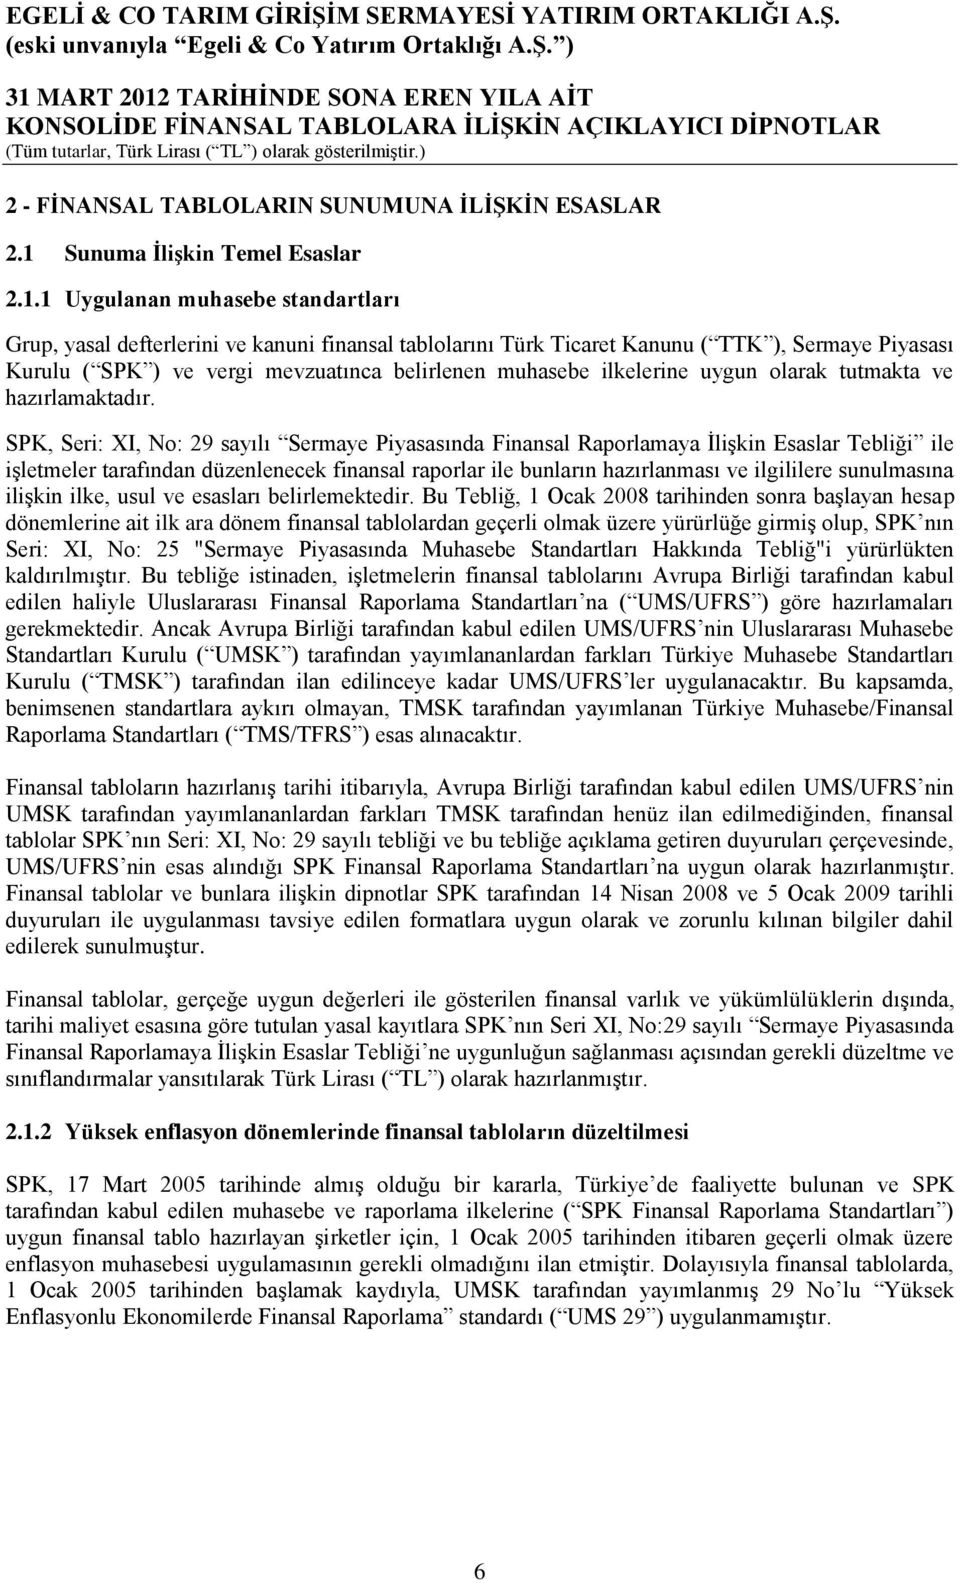 1 Uygulanan muhasebe standartları Grup, yasal defterlerini ve kanuni finansal tablolarını Türk Ticaret Kanunu ( TTK ), Sermaye Piyasası Kurulu ( SPK ) ve vergi mevzuatınca belirlenen muhasebe